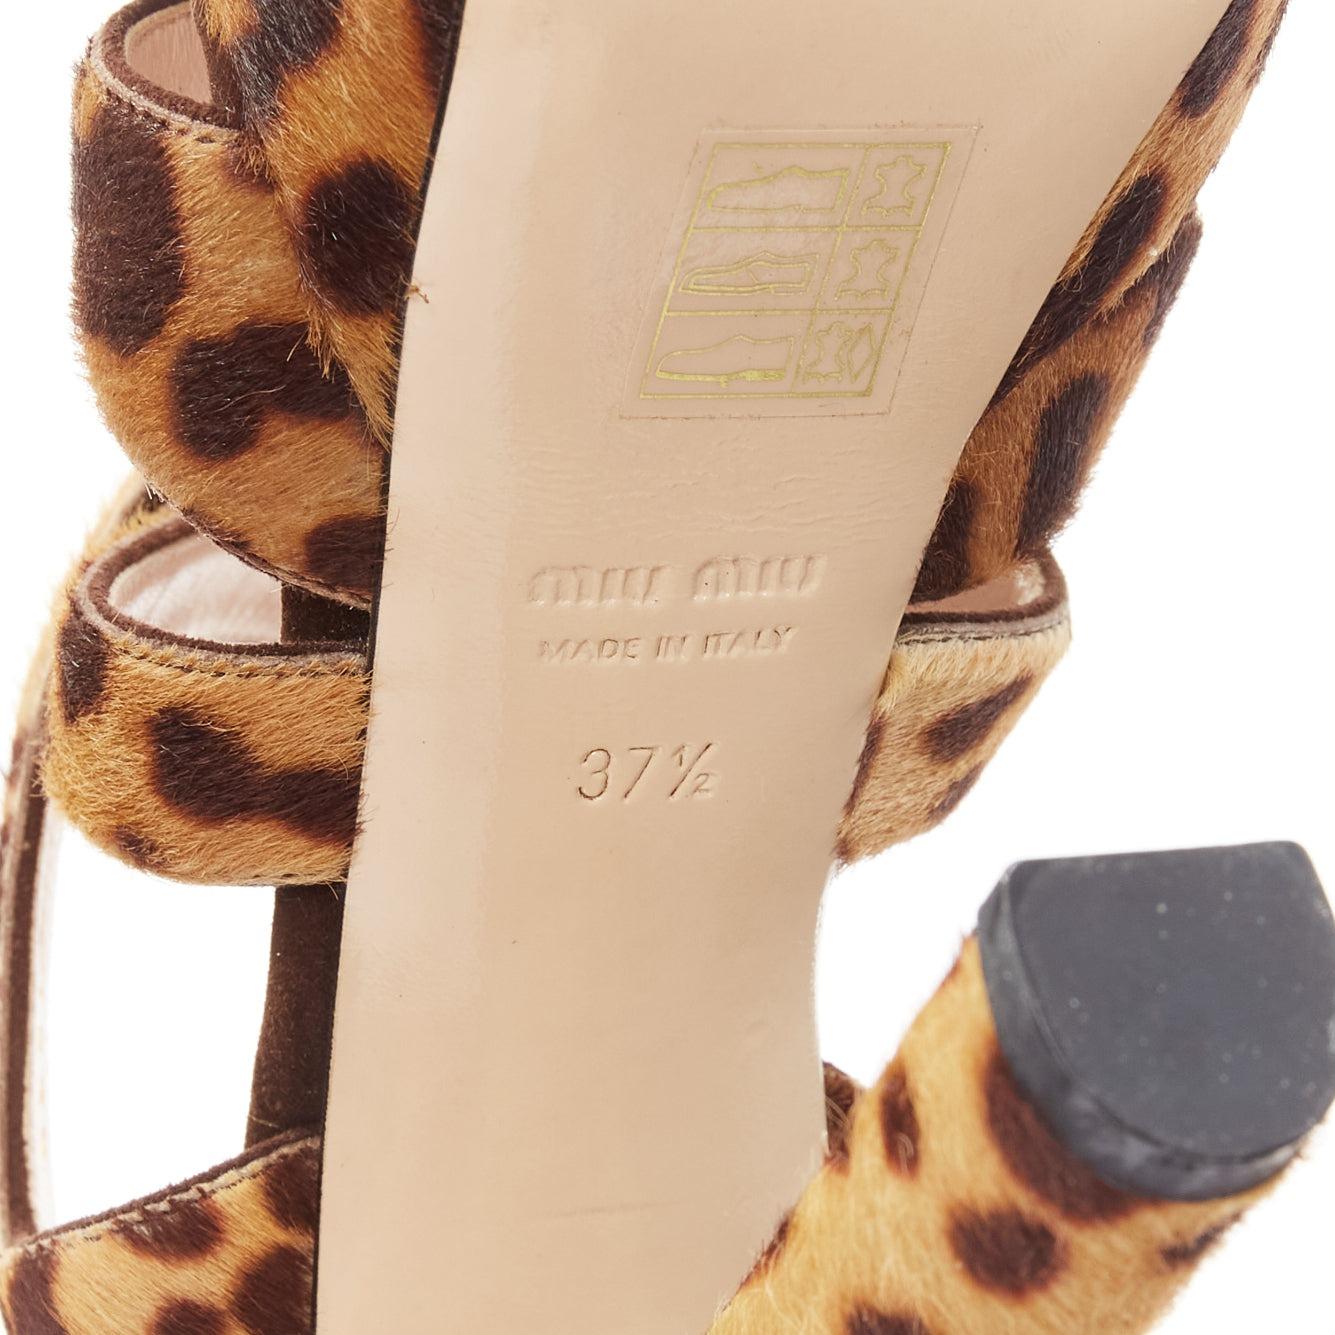 MIU MIU Chaussures à talons compensés en poils de poney imprimés léopard, marron EU37.5 5